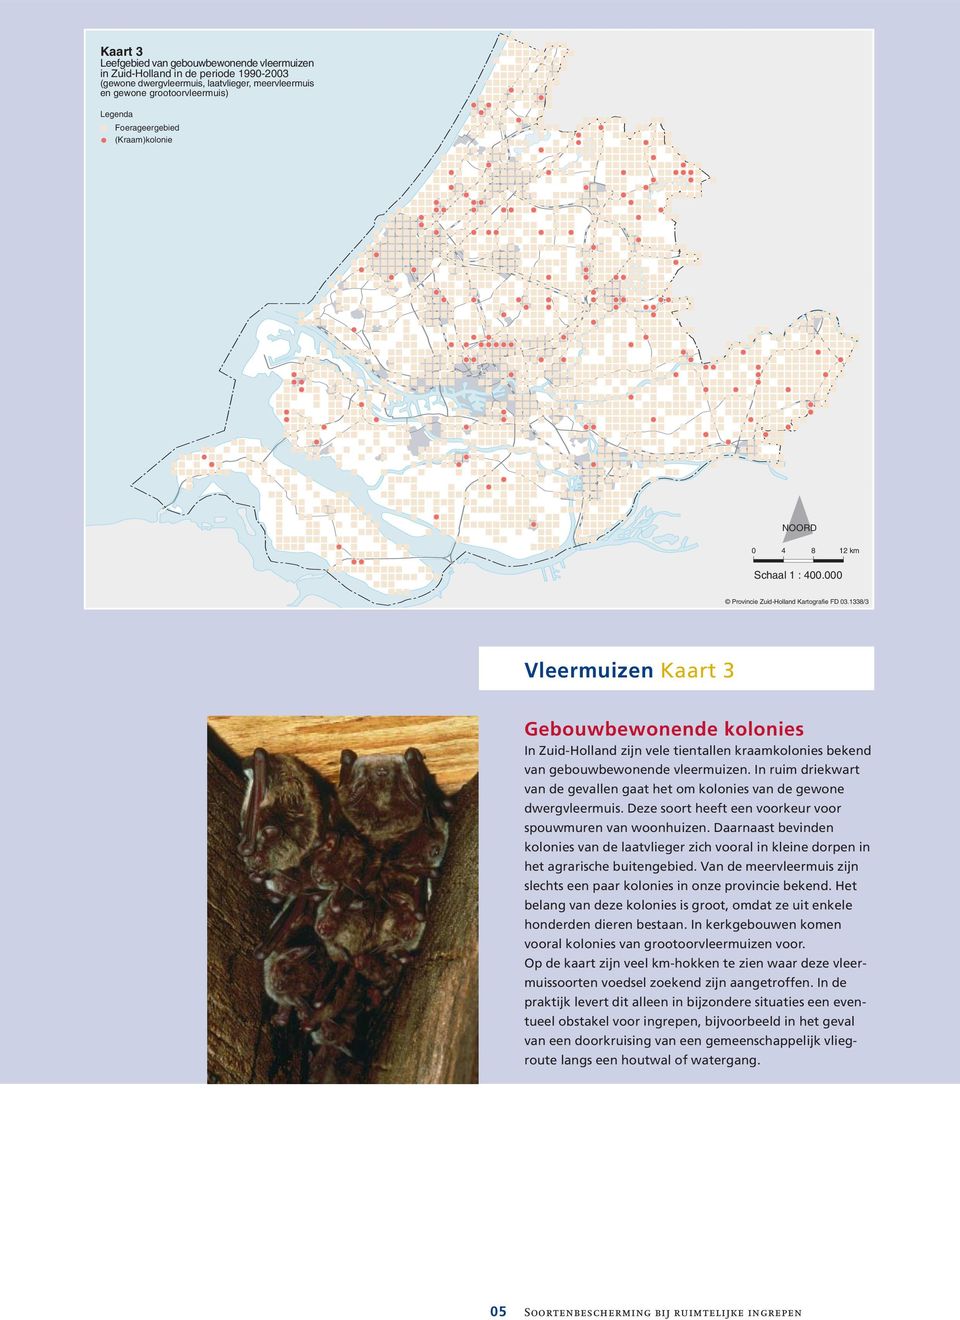 1338/3 Vleermuizen Kaart (kaart 3 3) Gebouwbewonende kolonies In Zuid-Holland zijn vele tientallen kraamkolonies bekend van gebouwbewonende vleermuizen.